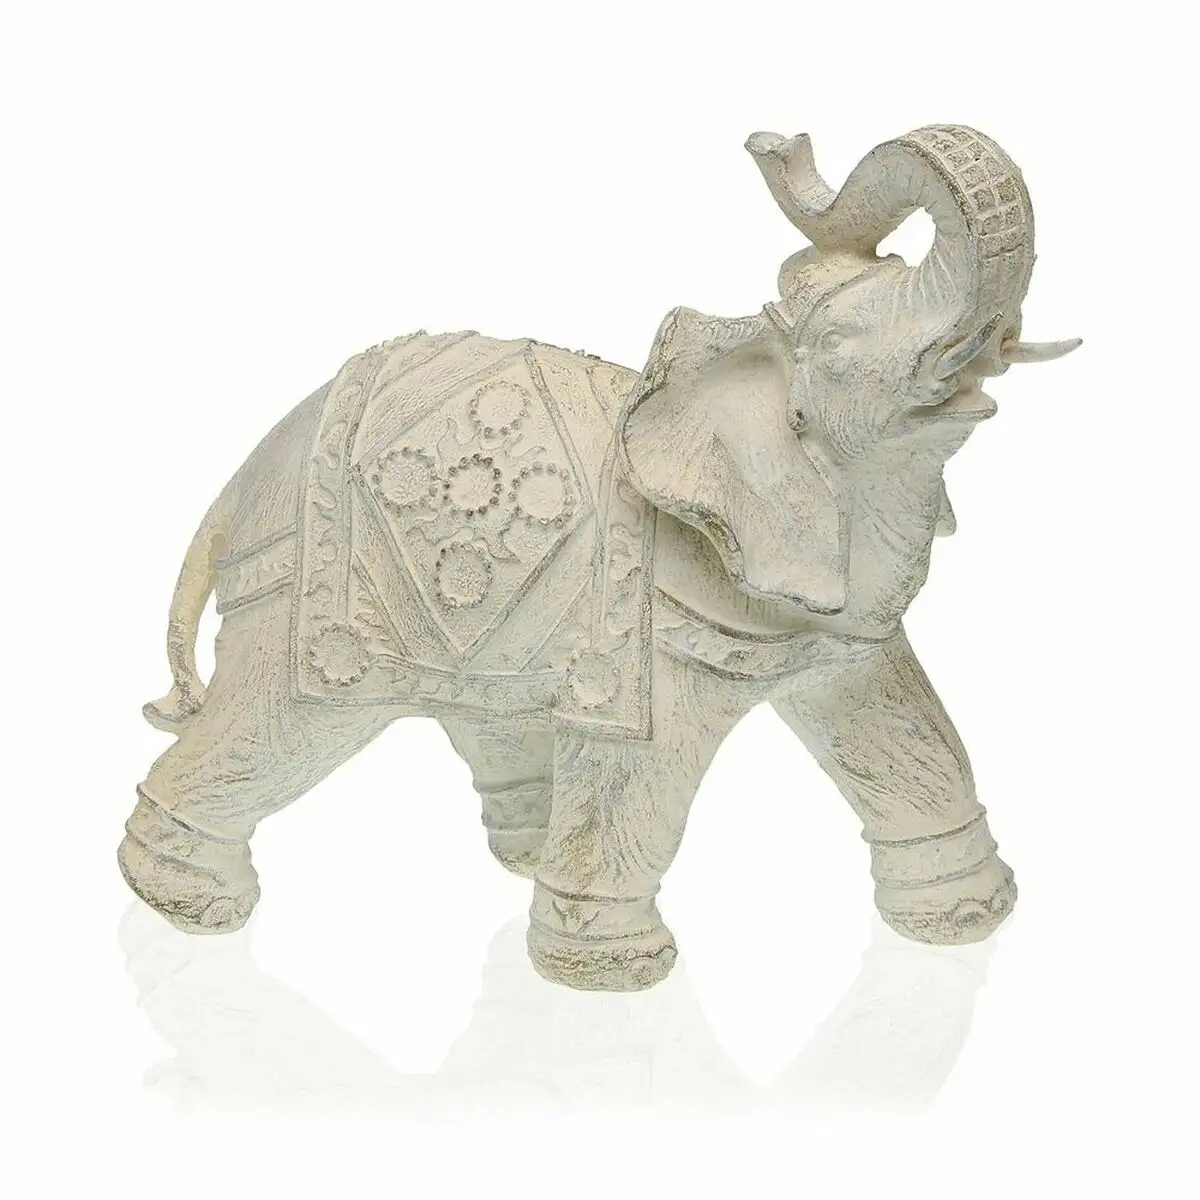 Figurine decorative versa elephant resine 8 5 x 21 x 19 5 cm _8824. DIAYTAR SENEGAL - Là où Choisir est un Acte d'Amour pour la Culture Sénégalaise. Explorez notre gamme et choisissez des produits qui célèbrent la richesse de notre patrimoine.